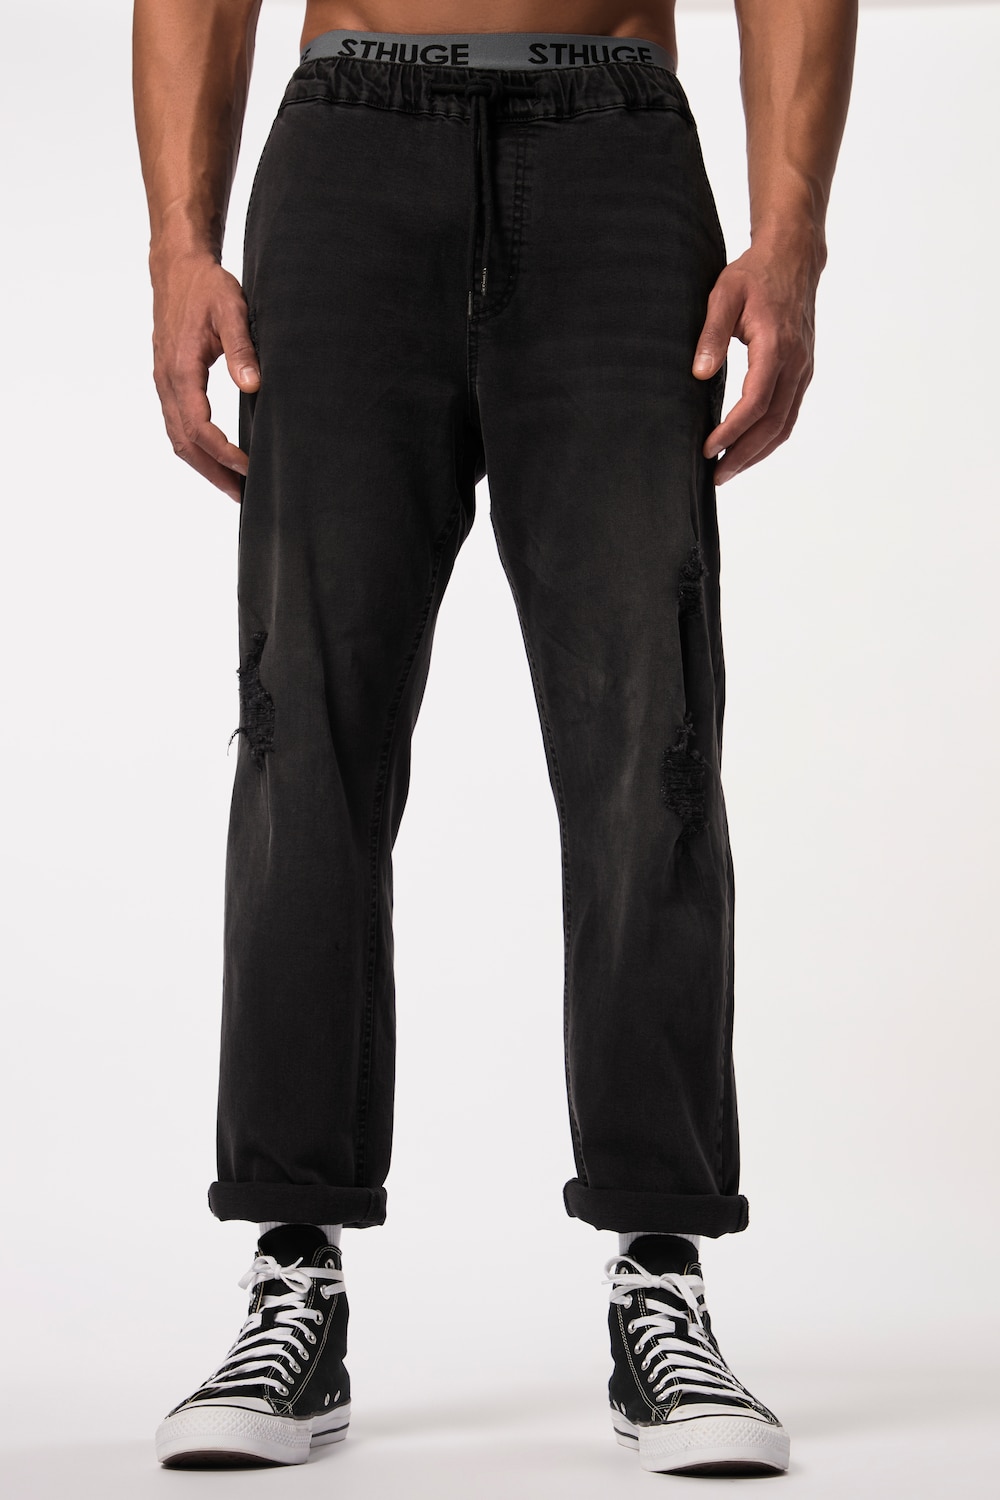 Grote Maten STHUGE jeans FLEXLASTIC®male, zwart, Maat: XL, Katoen, STHUGE